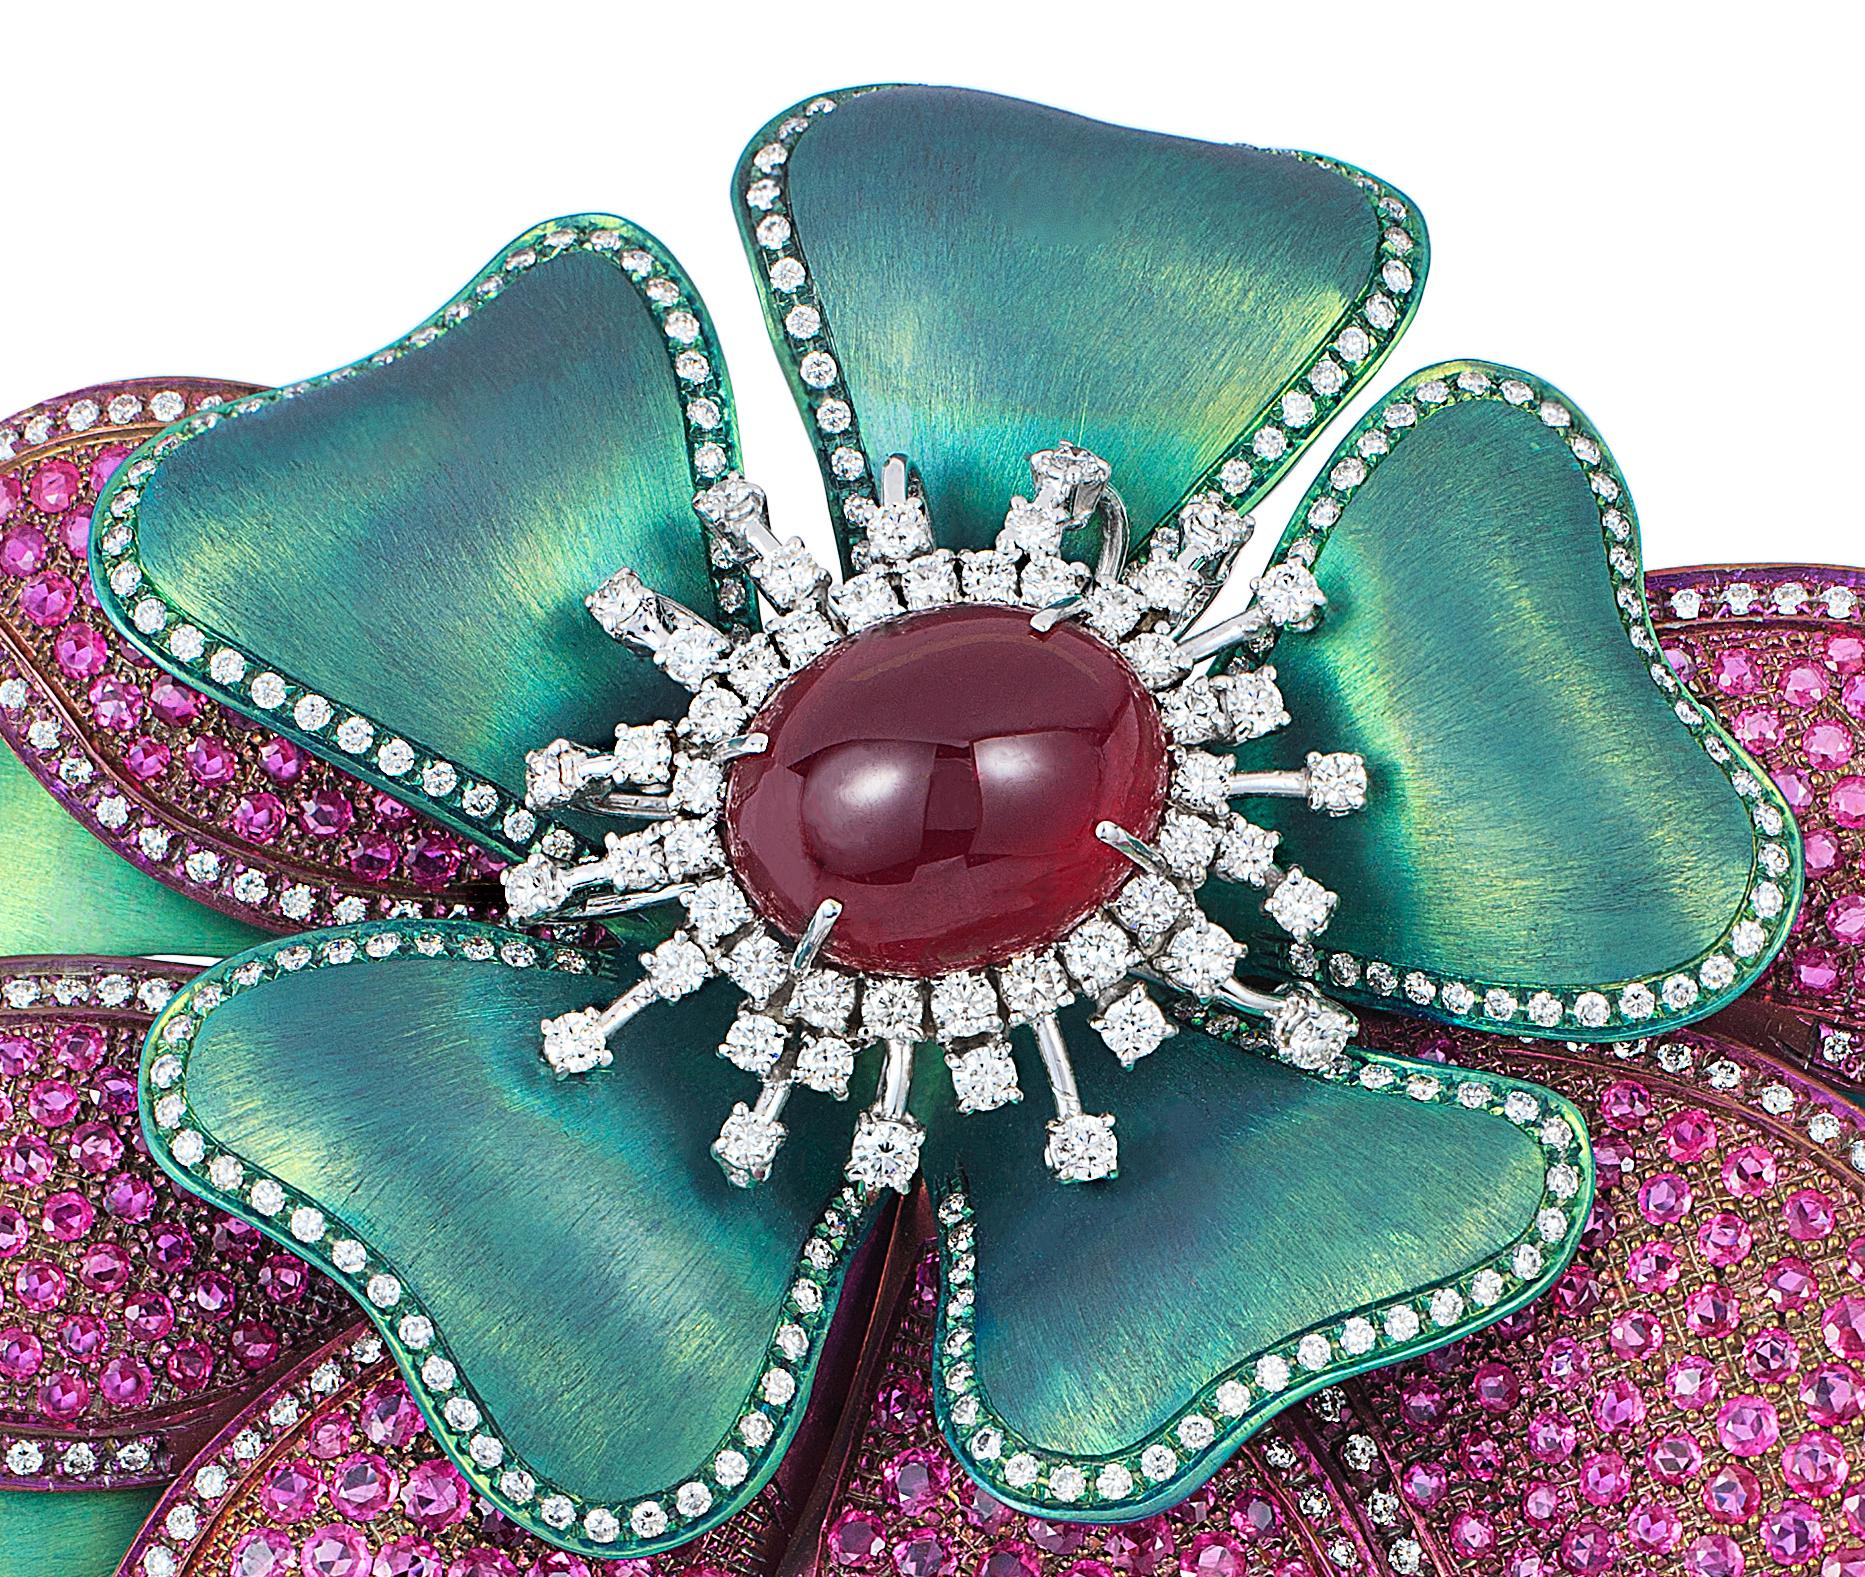 Broche fleur Andreoli Ruby Cabochon Pink Sapphire Diamond Titanium. Andreoli a été l'un des premiers créateurs de bijoux à utiliser le titane en haute joaillerie par rapport au 18KT ou au platine. L'utilisation du titane permet de créer des designs